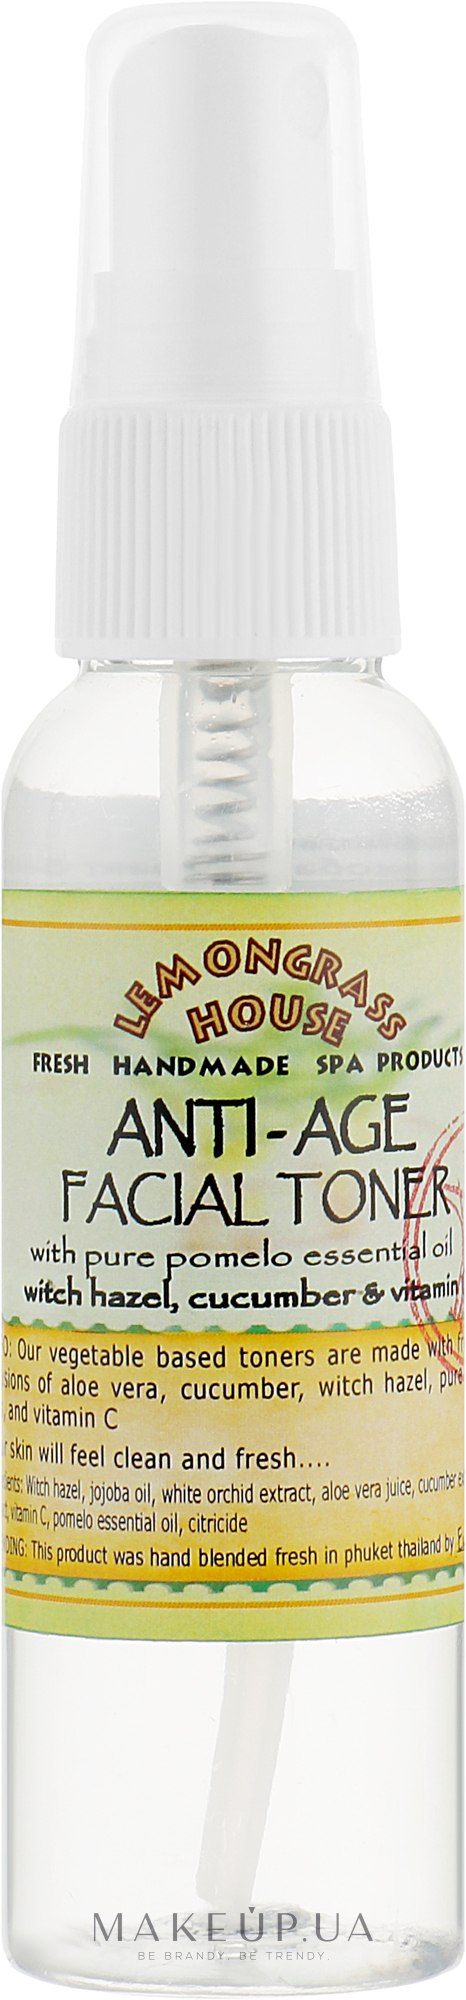 Освіжальний тонік для обличчя "Антивіковий" - Lemongrass House Anti-Age Facial Toner — фото 60ml